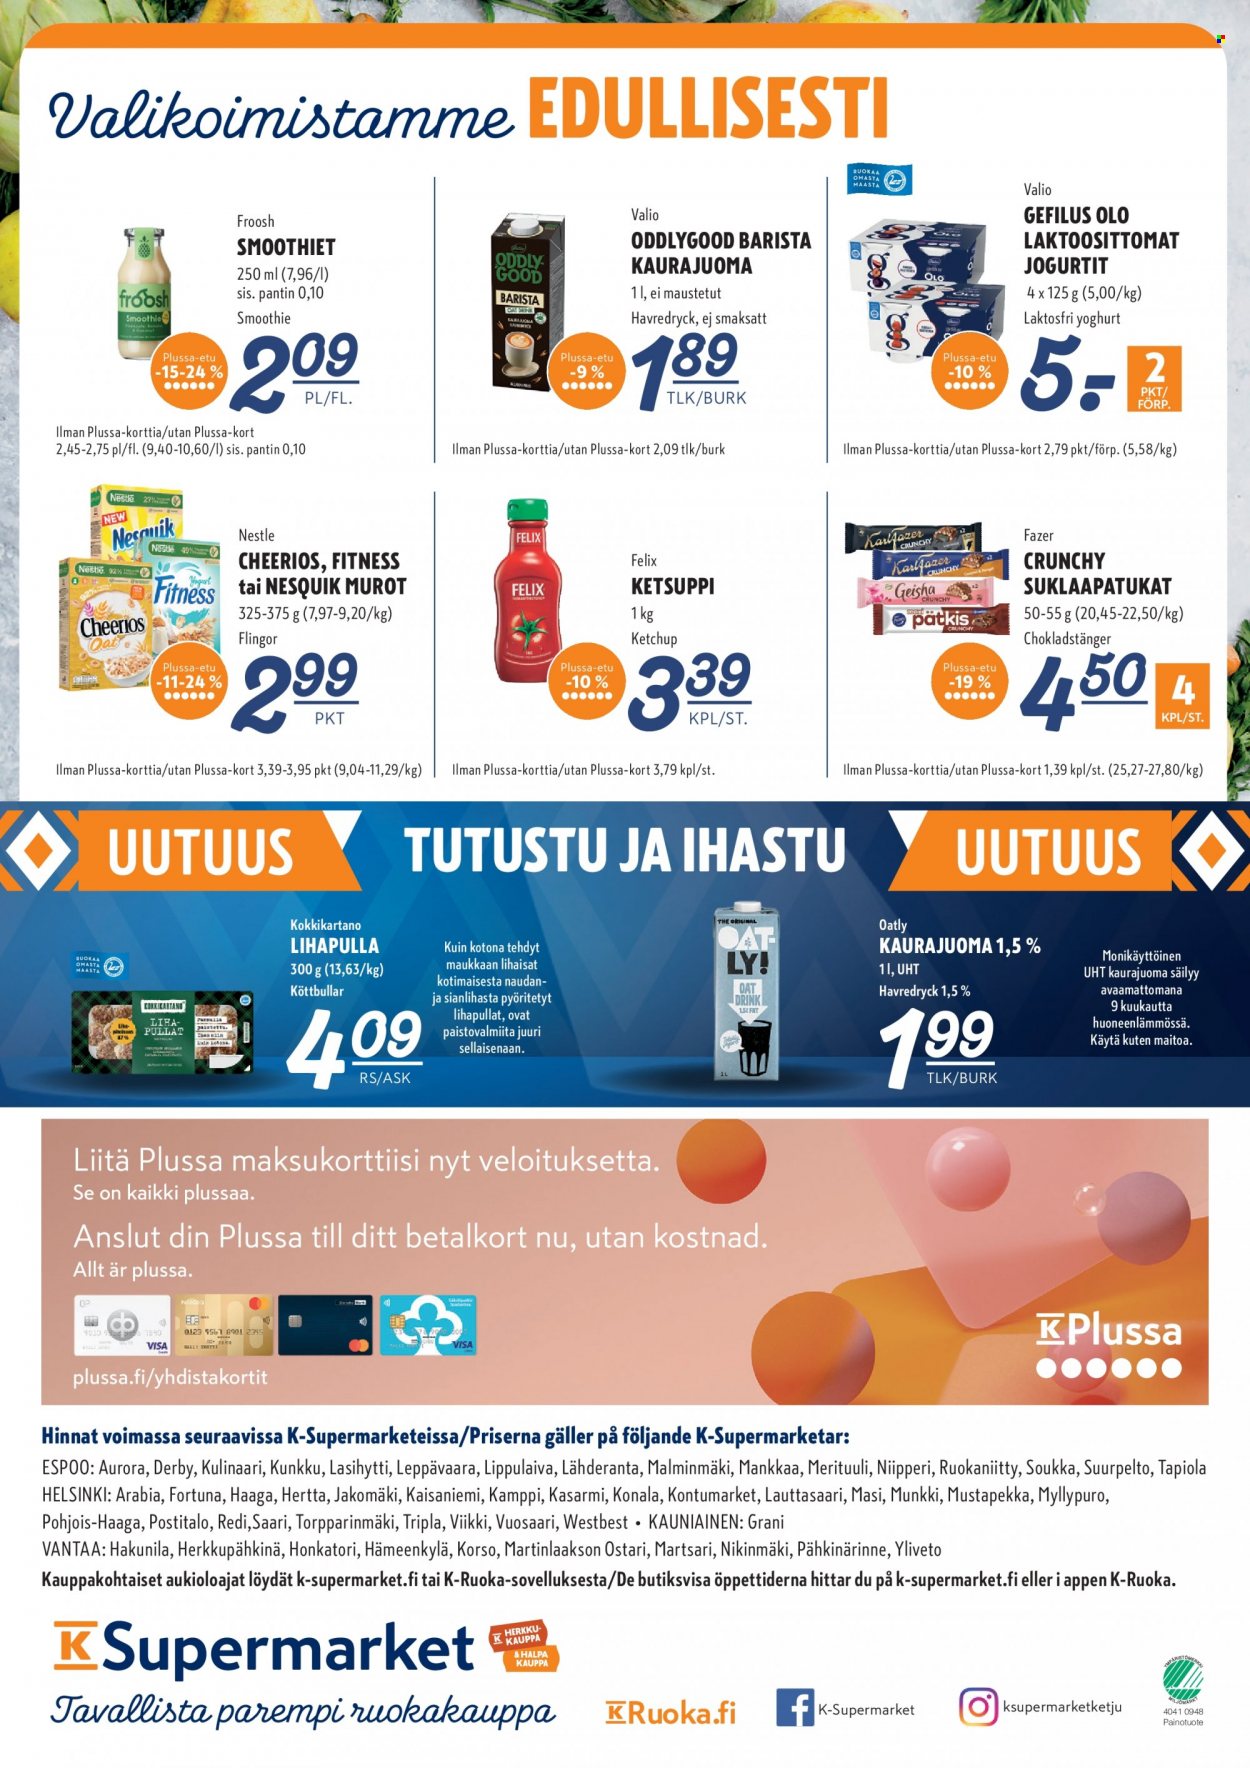 K-Supermarket tarjouslehti  - 23.03.2023 - 26.03.2023.